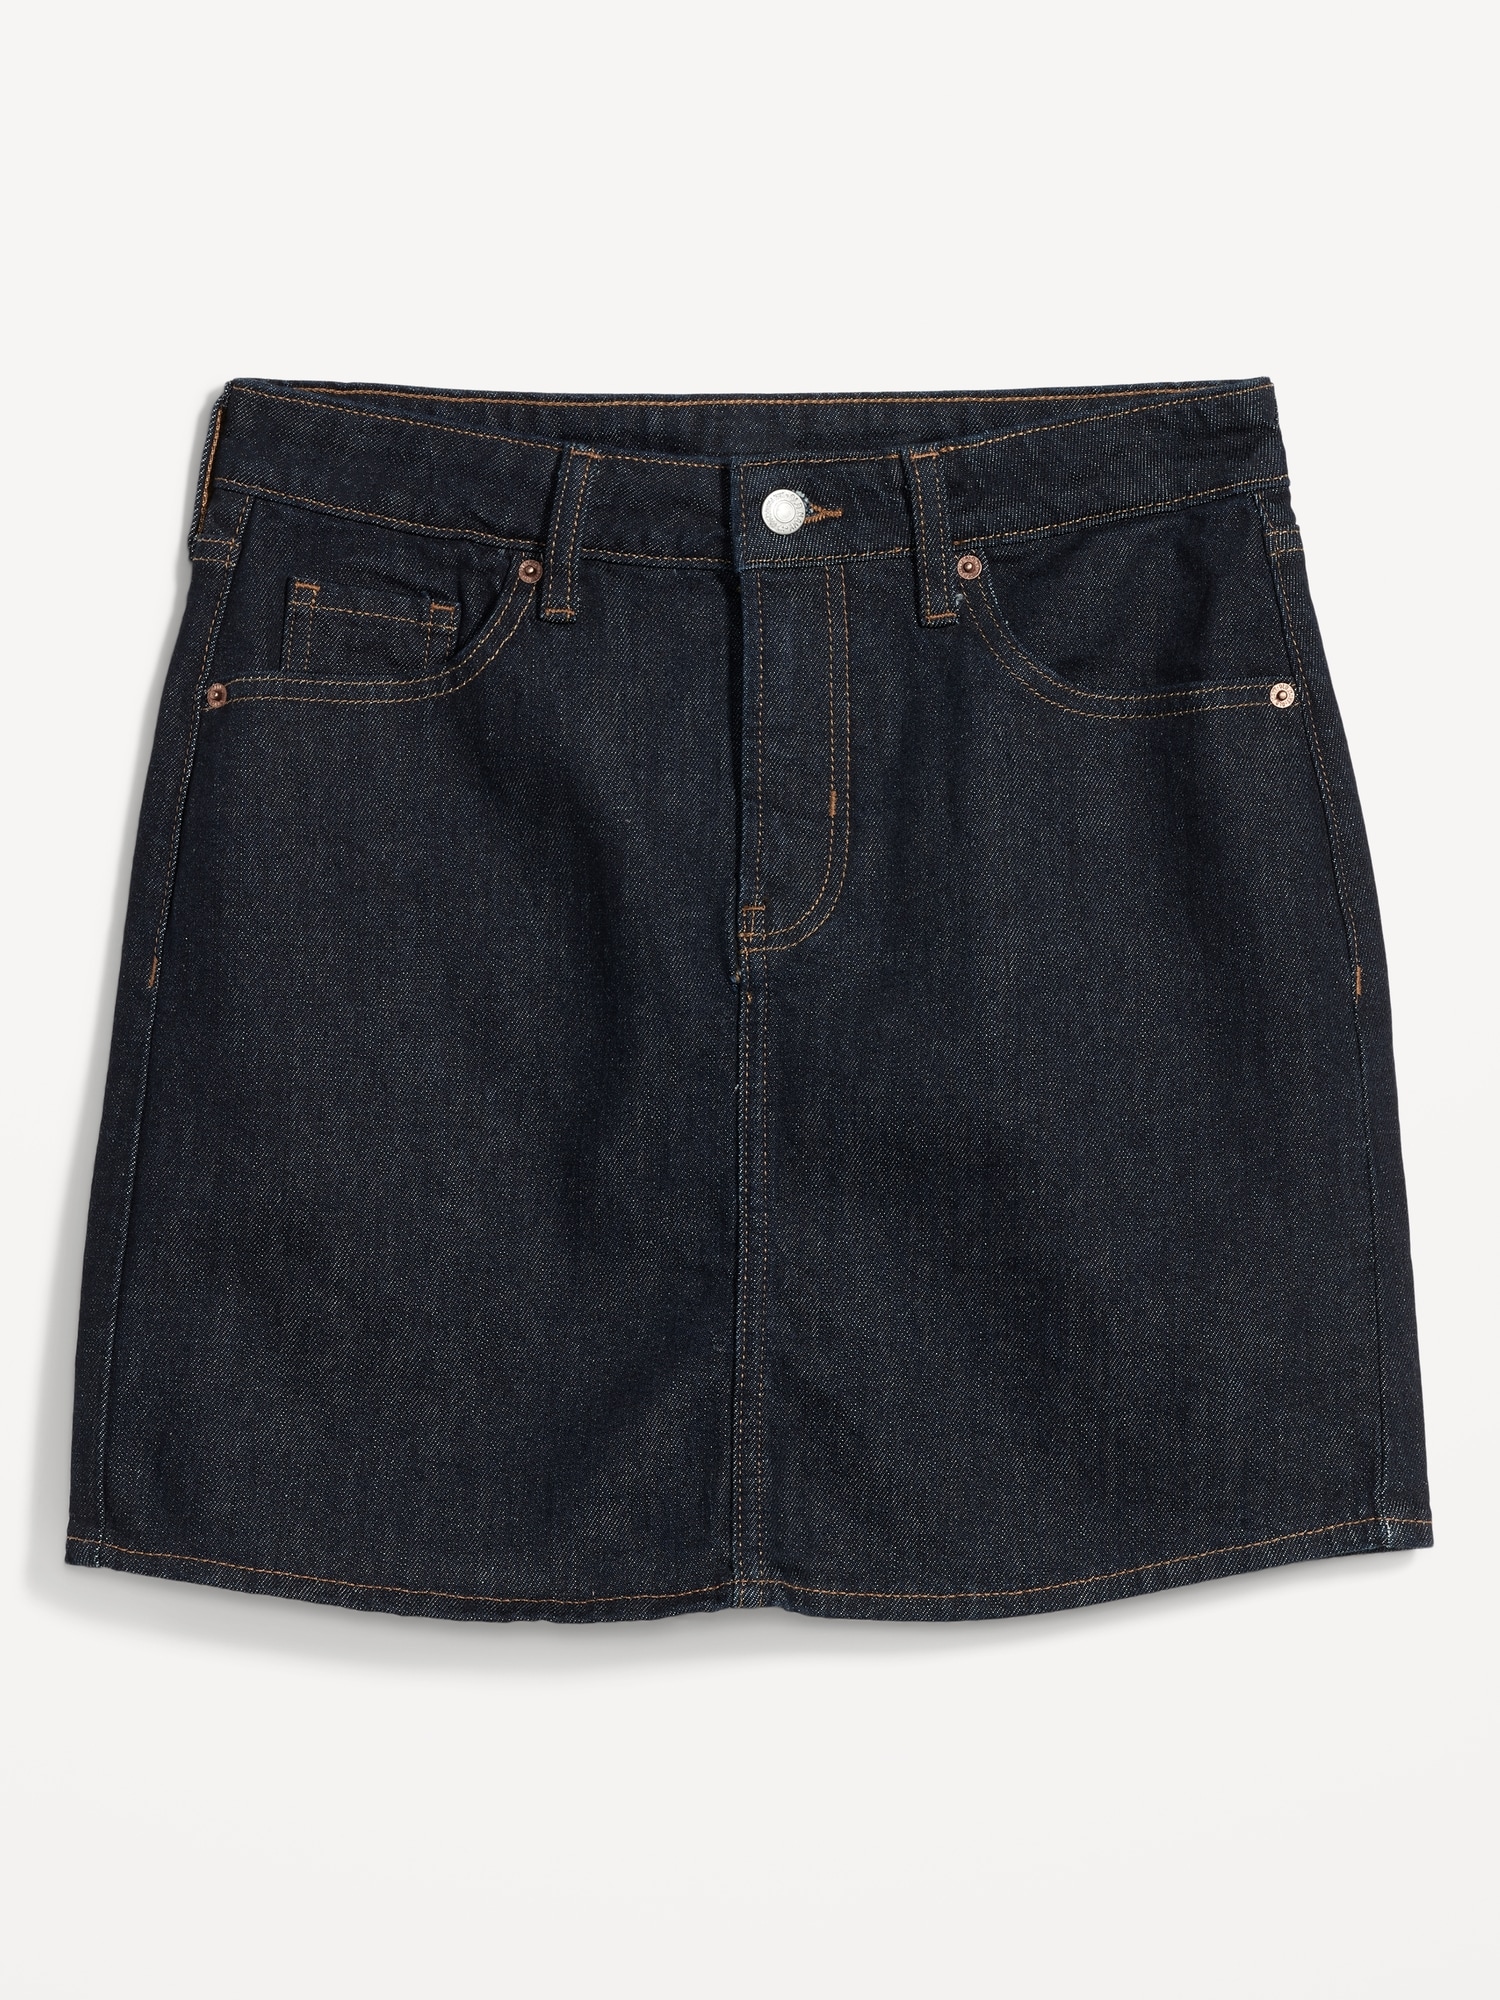 High-Waisted OG Straight Black-Wash Mini Jean Skirt